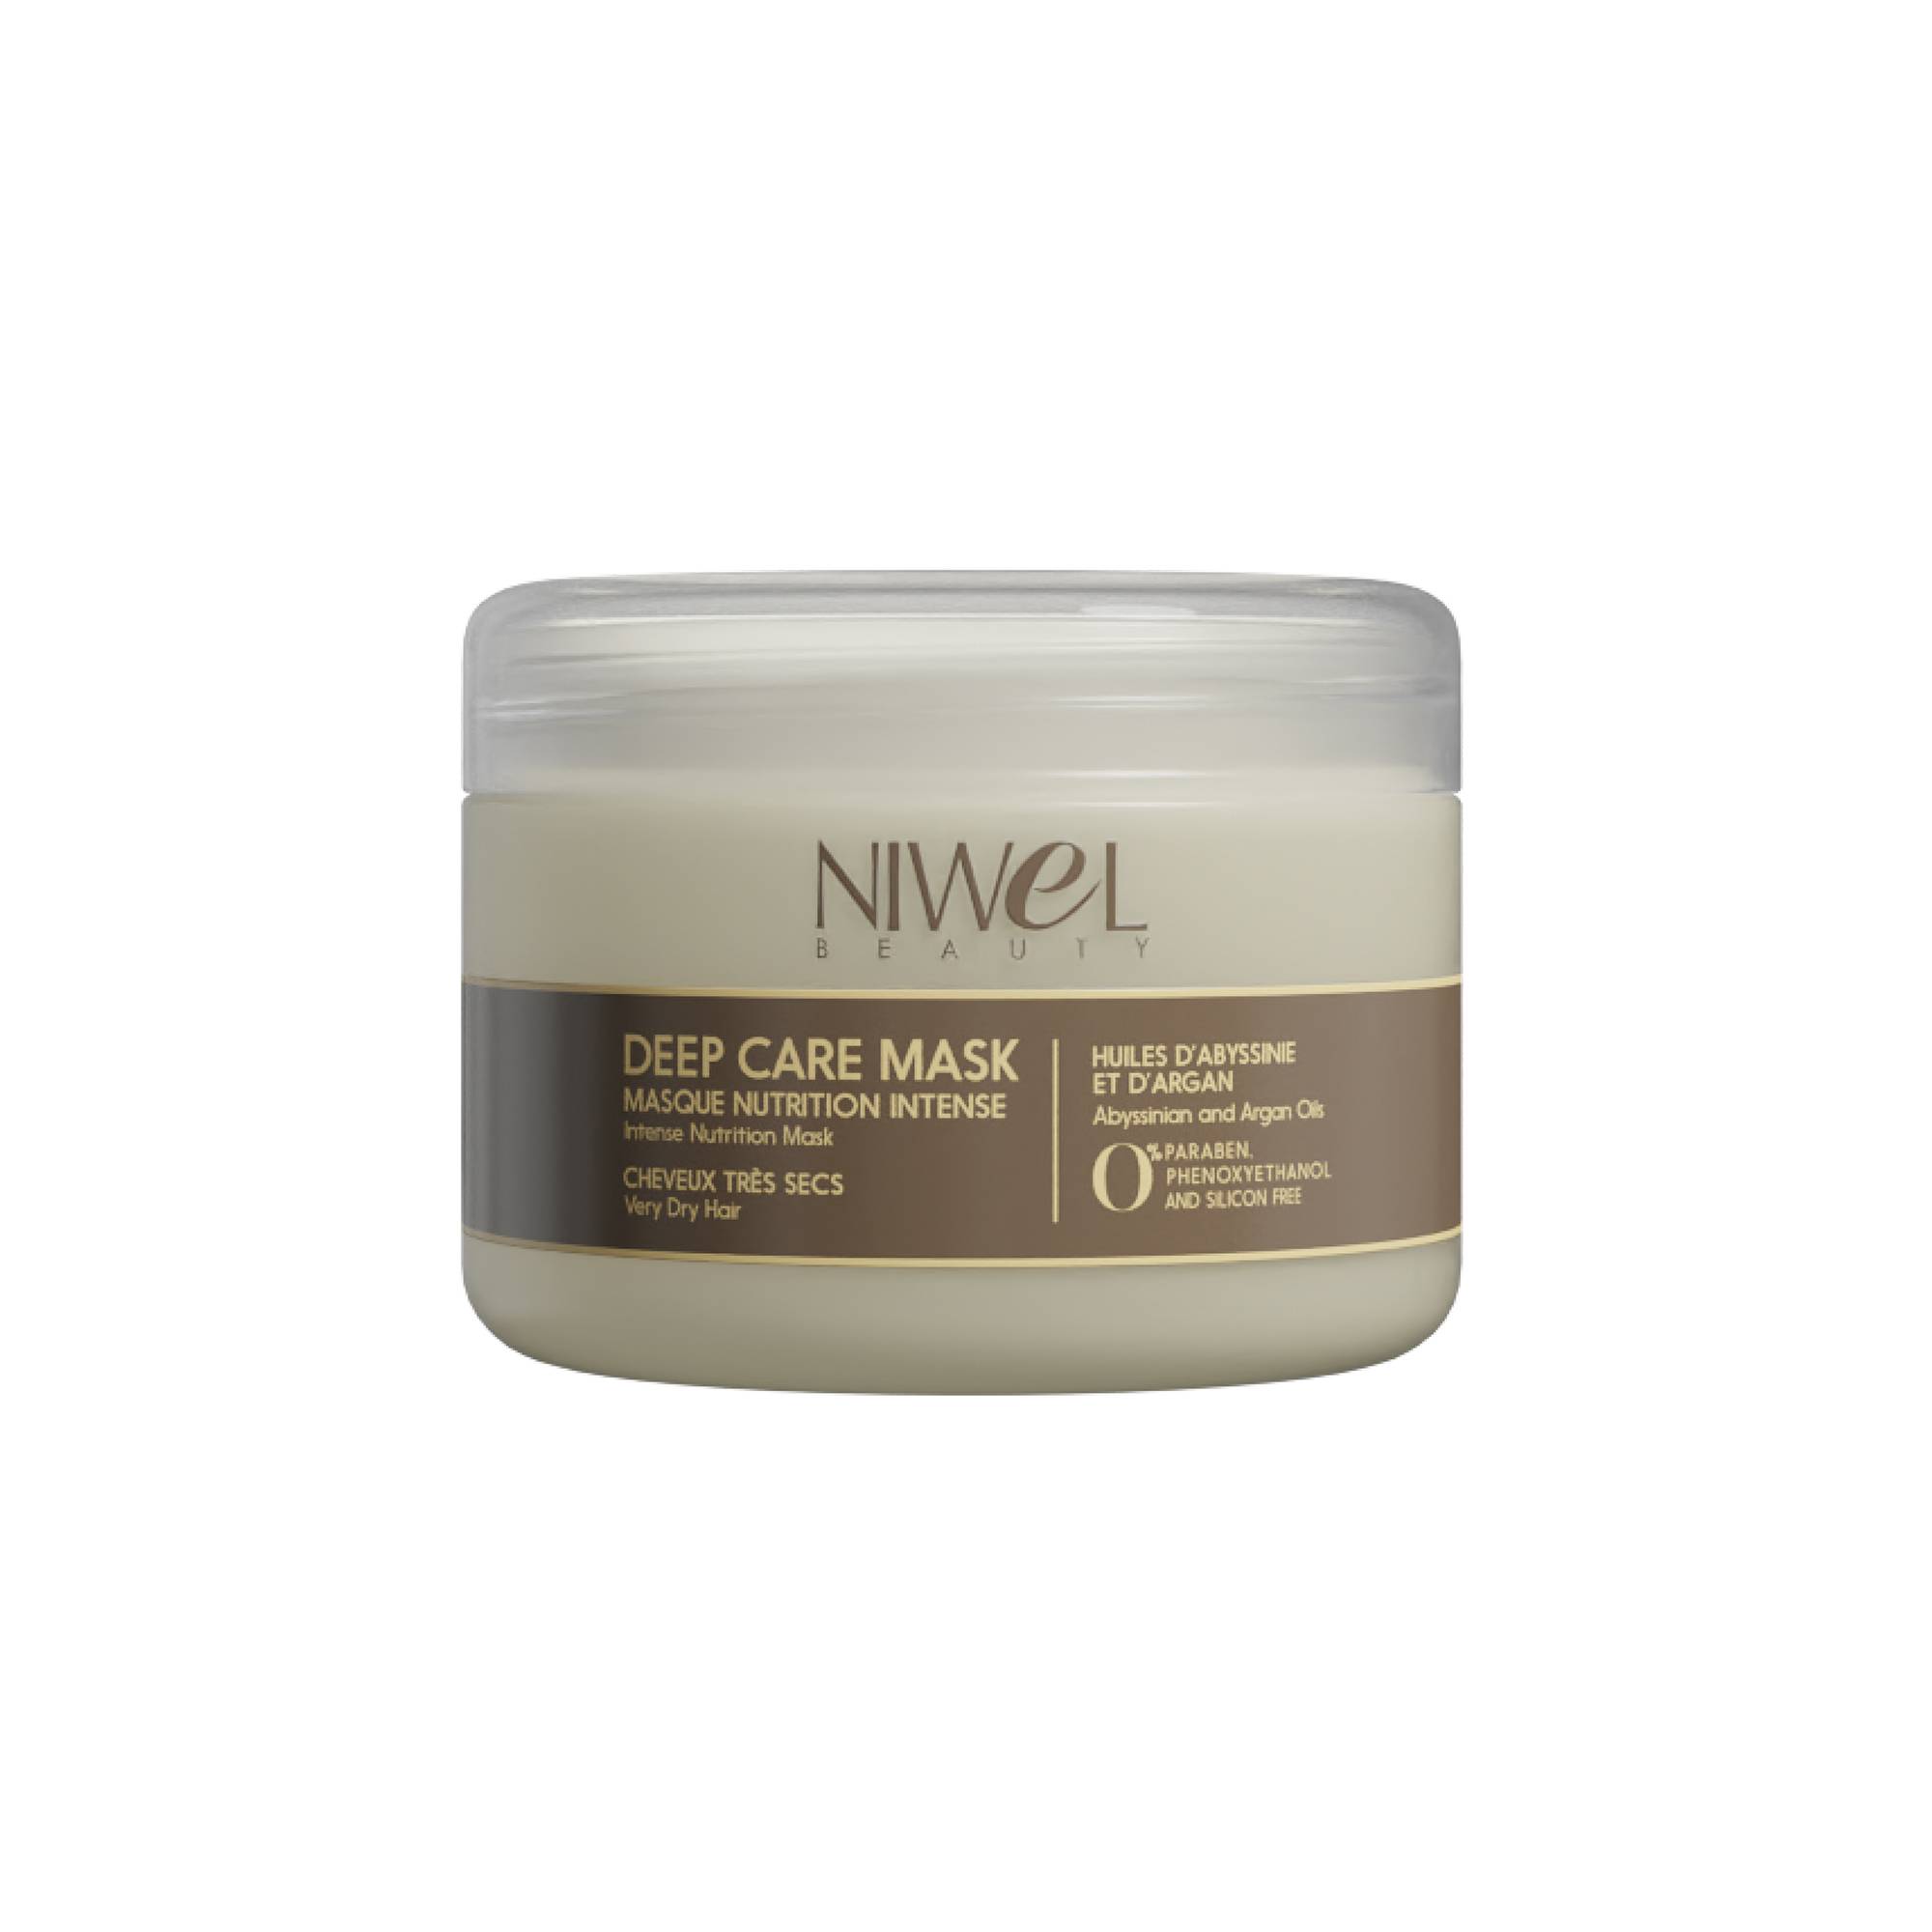 Masque nutrition intense cheveux très secs del marchio Niwel Beauty Capacità 250ml - 1